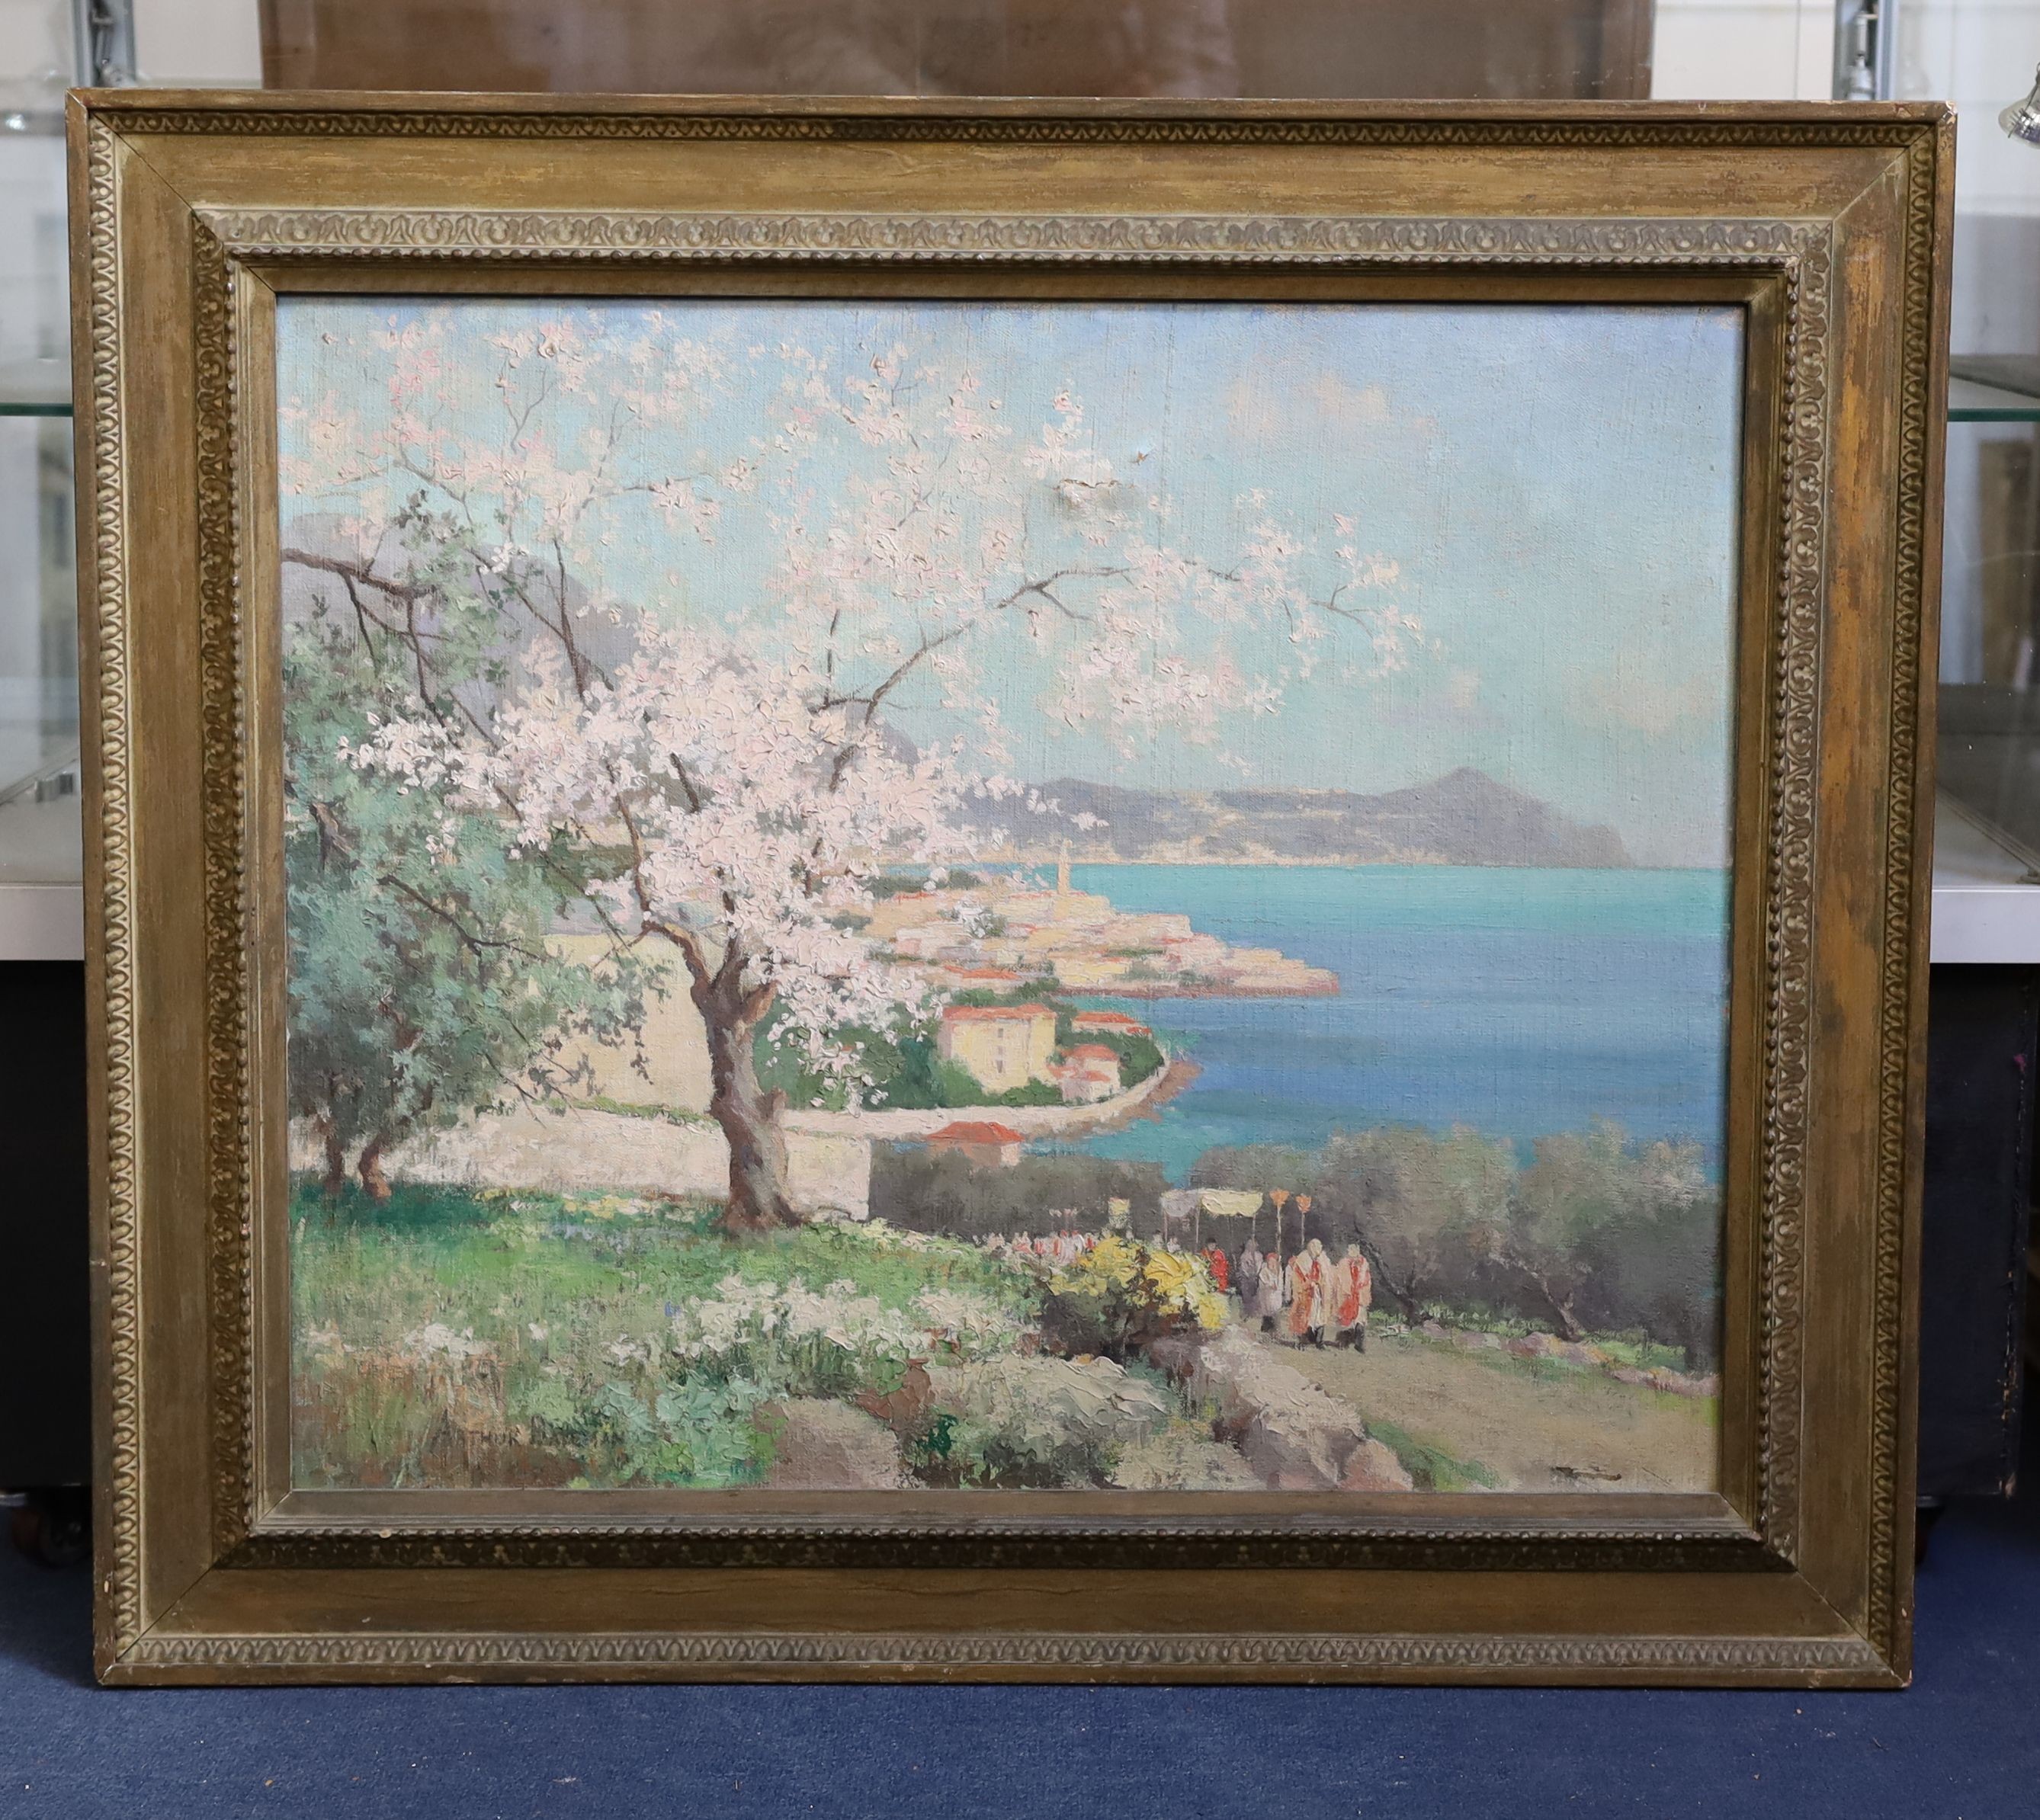 Arthur Bernard Bateman (1883-1970), A Spring Festival in Italy, oil on canvas, 62 x 75cm